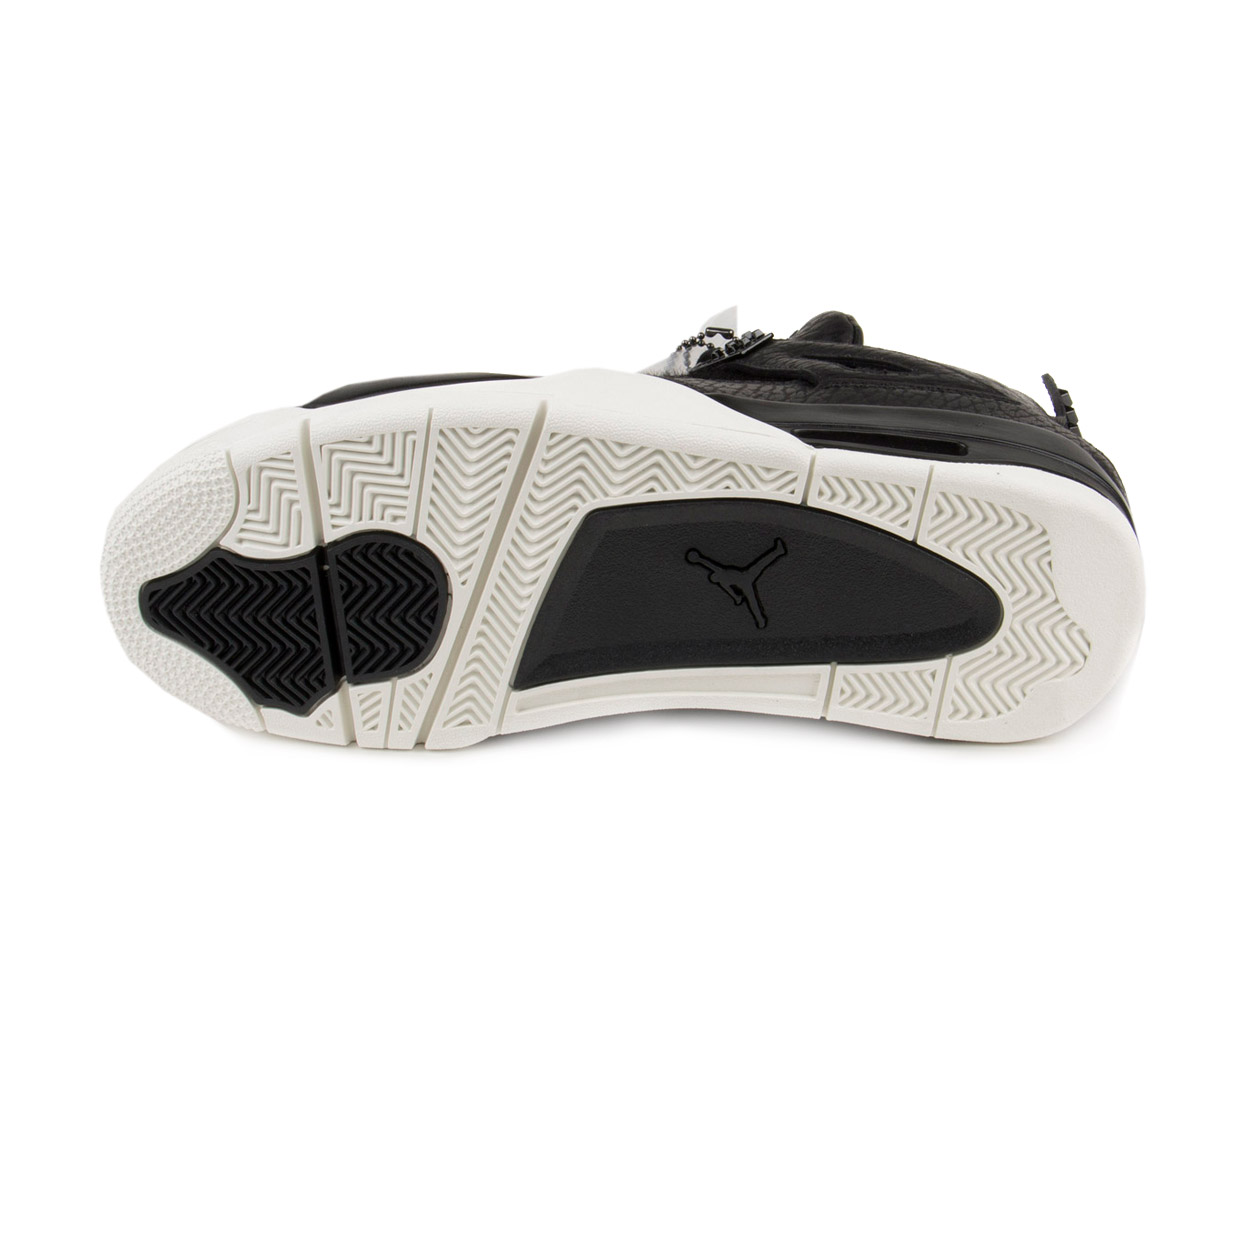 Nike Mens Air Jordan 4 Retro Premium "Pinnacle" Black/Sail 819139-010 - image 5 of 7